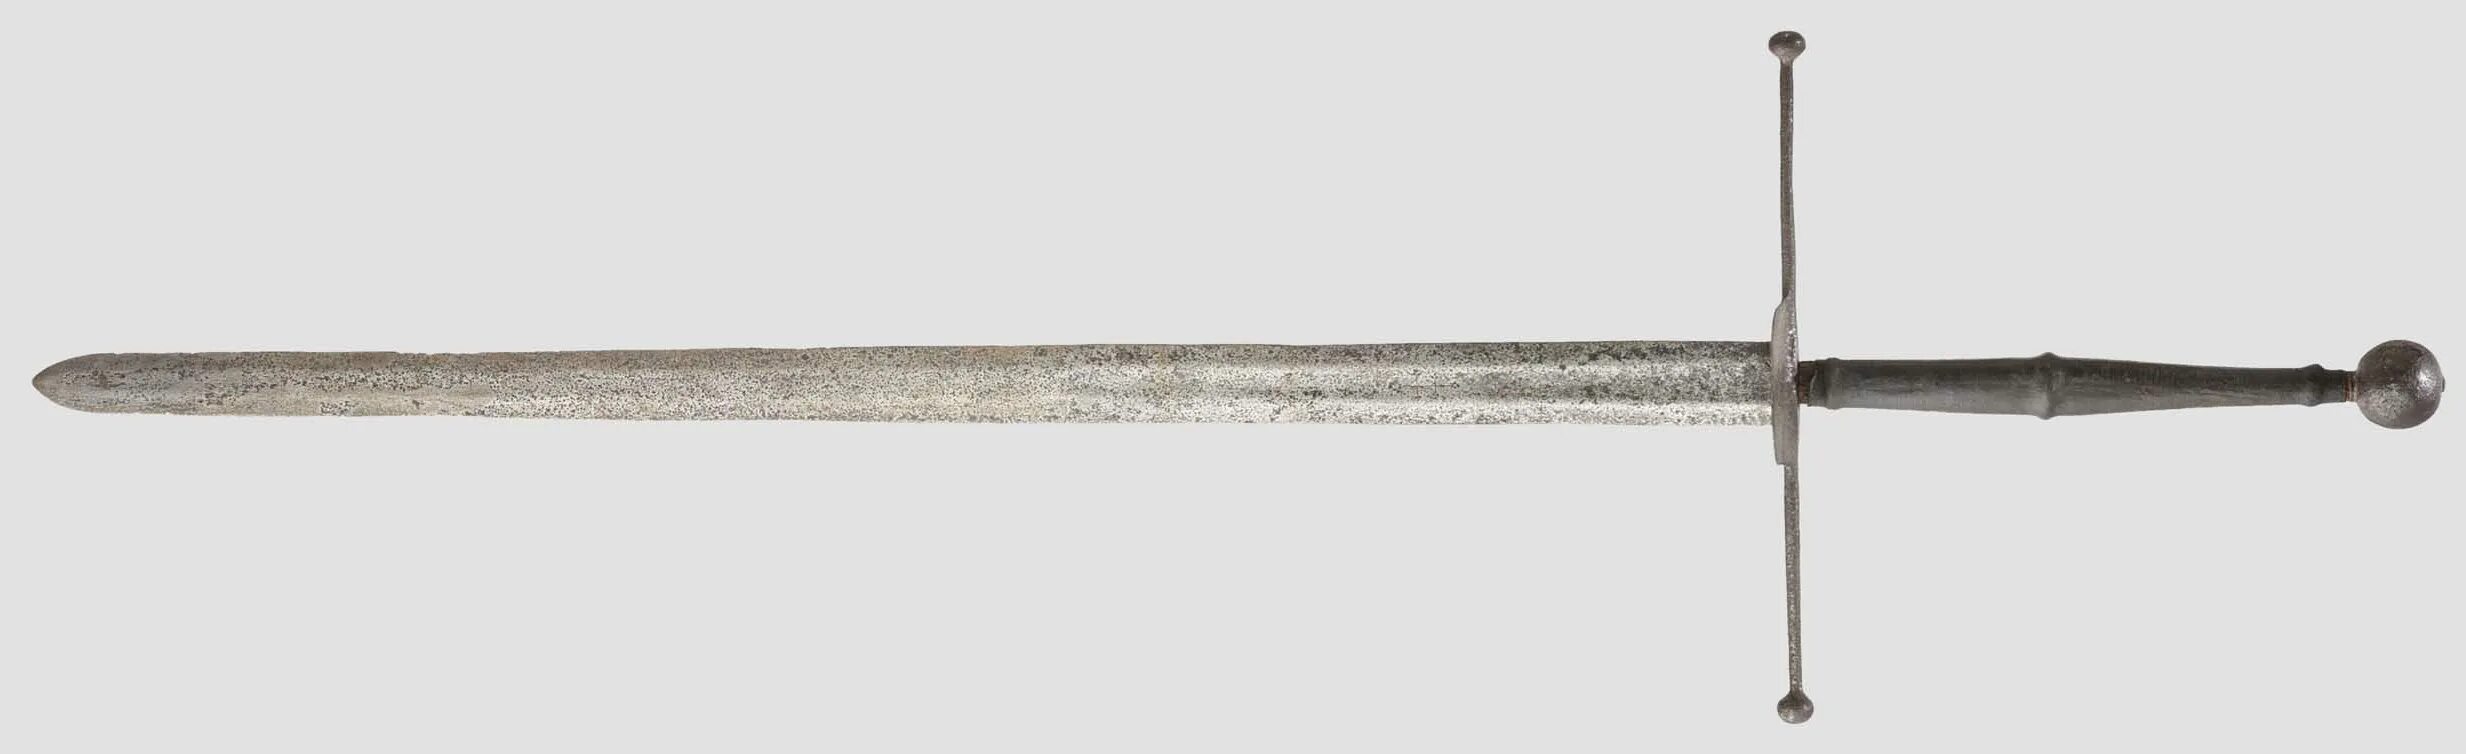 Двуручник с гибридным клинком. Двуручные мечи 15 века. Двуручный меч 15 век. Двуручный меч 16 век. Меч цвайхандер 16 века.